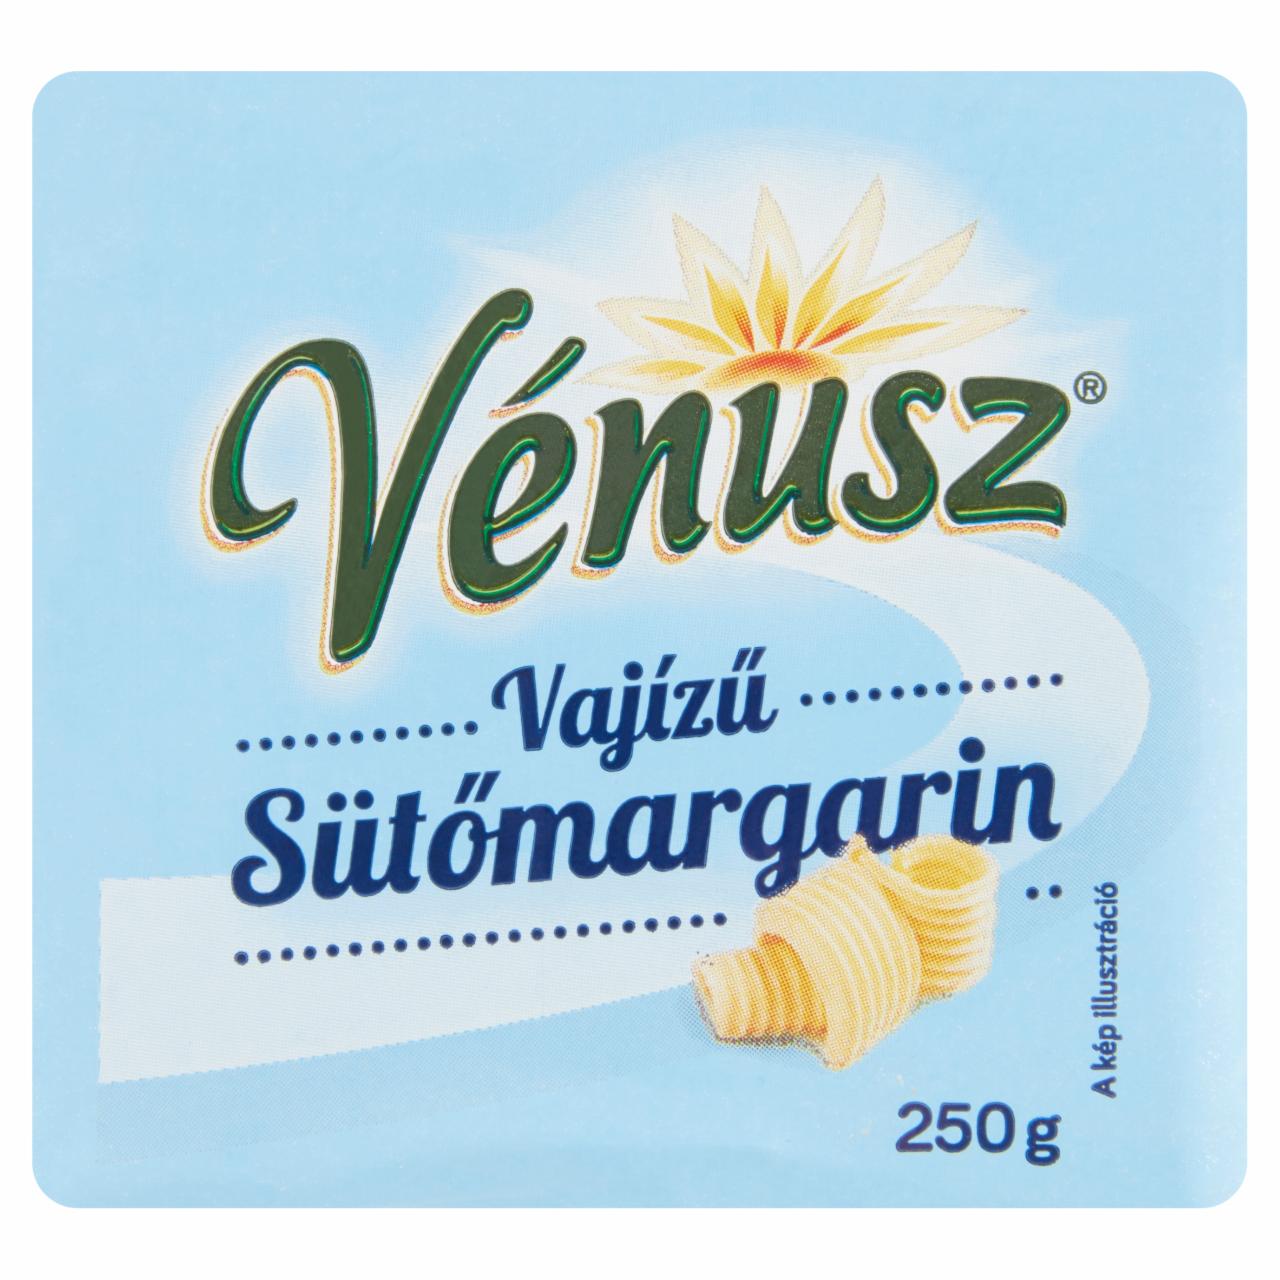 Képek - Vénusz vajízű sütőmargarin 250 g